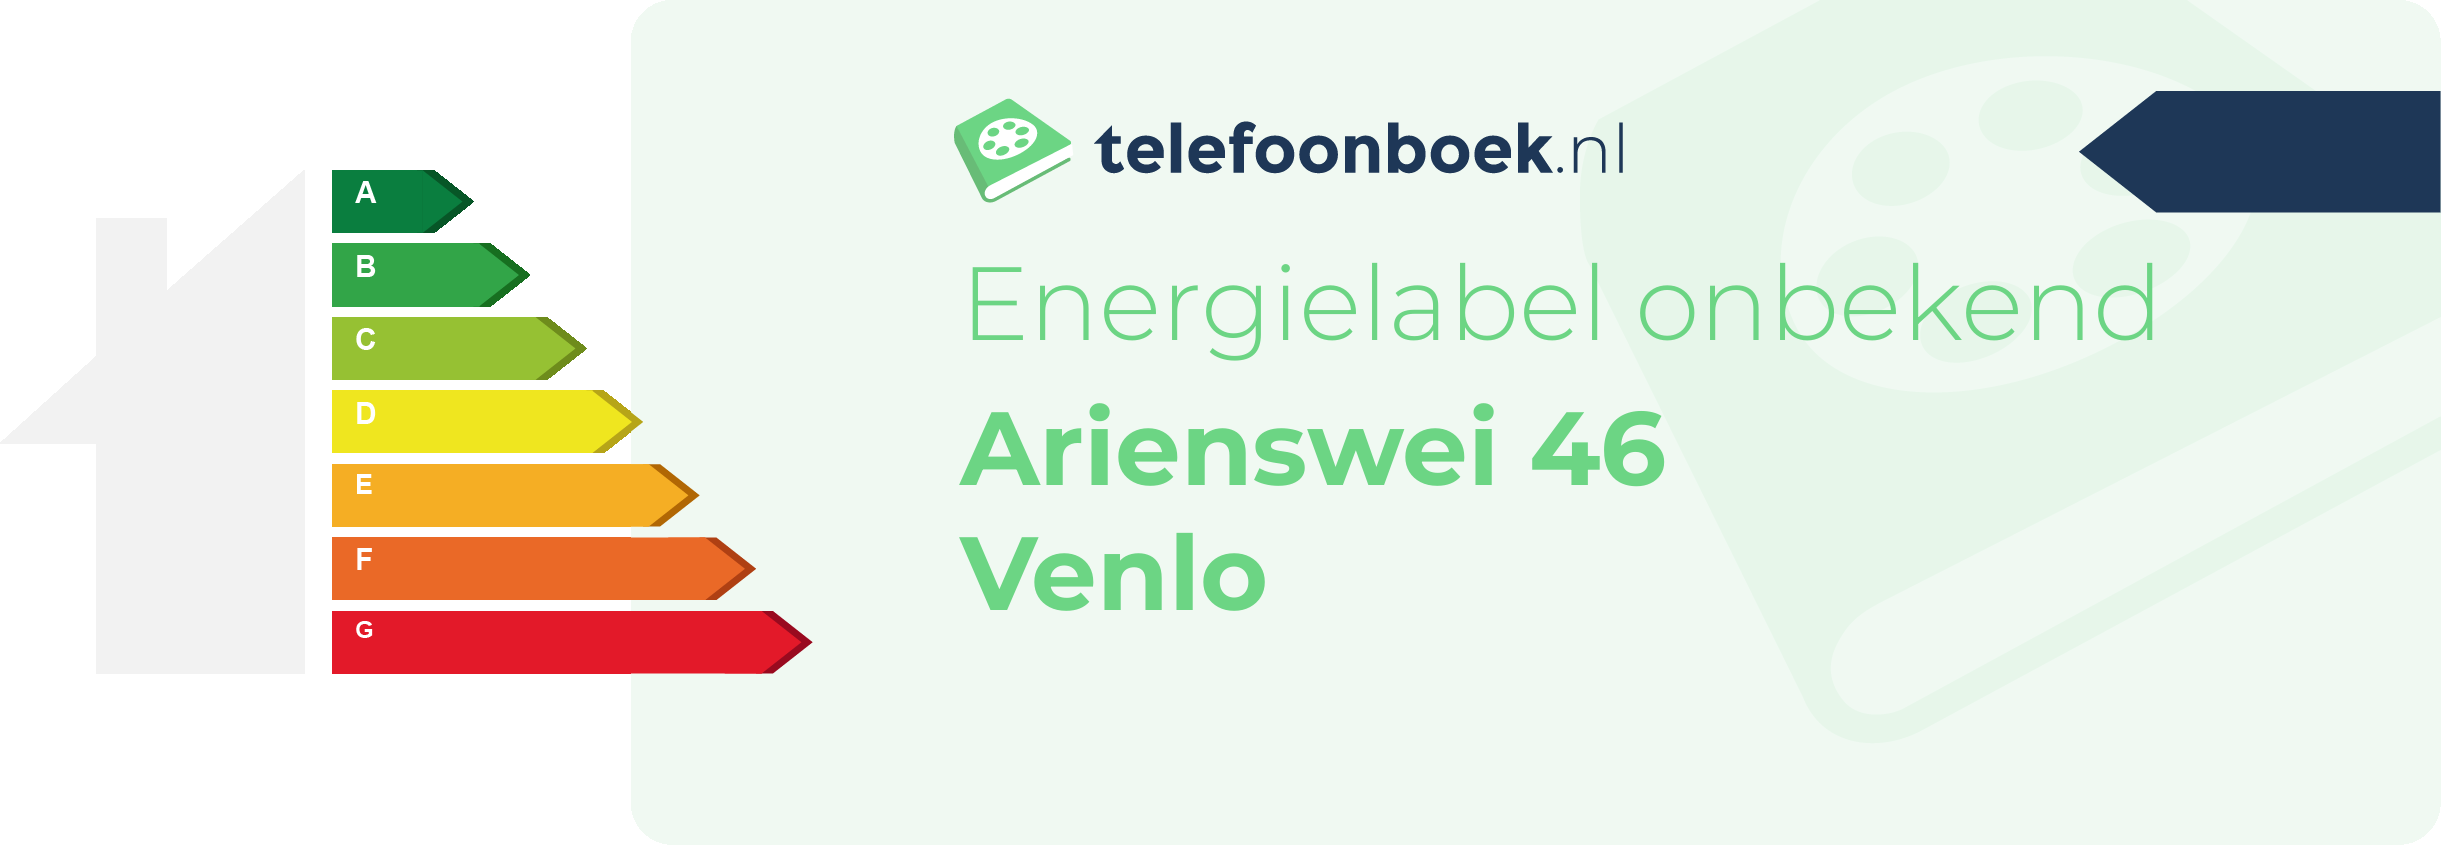 Energielabel Arienswei 46 Venlo